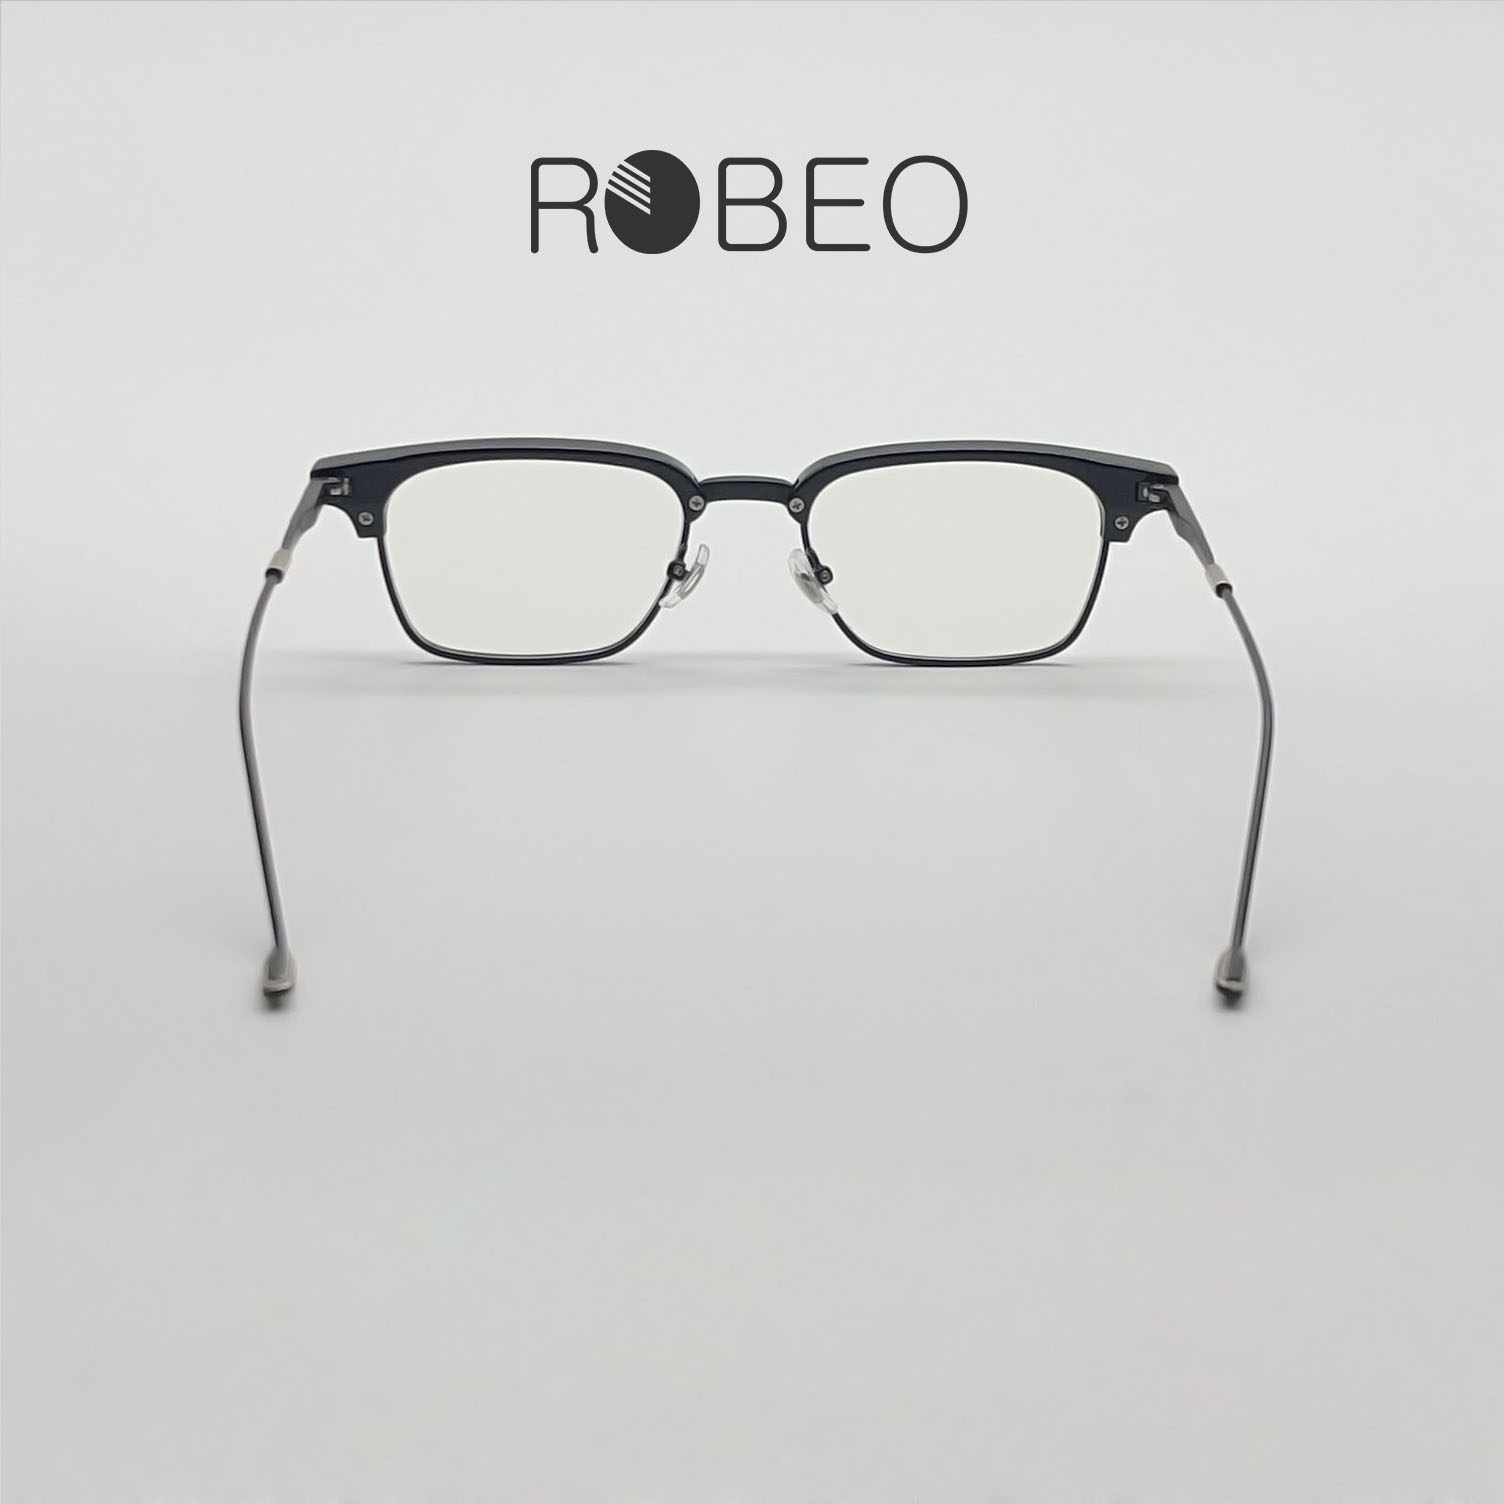 Gọng kính cận nam nữ ROBEO - R0423 , kính giả cận sao hàn mắt chống ánh sáng xanh - Fullbox